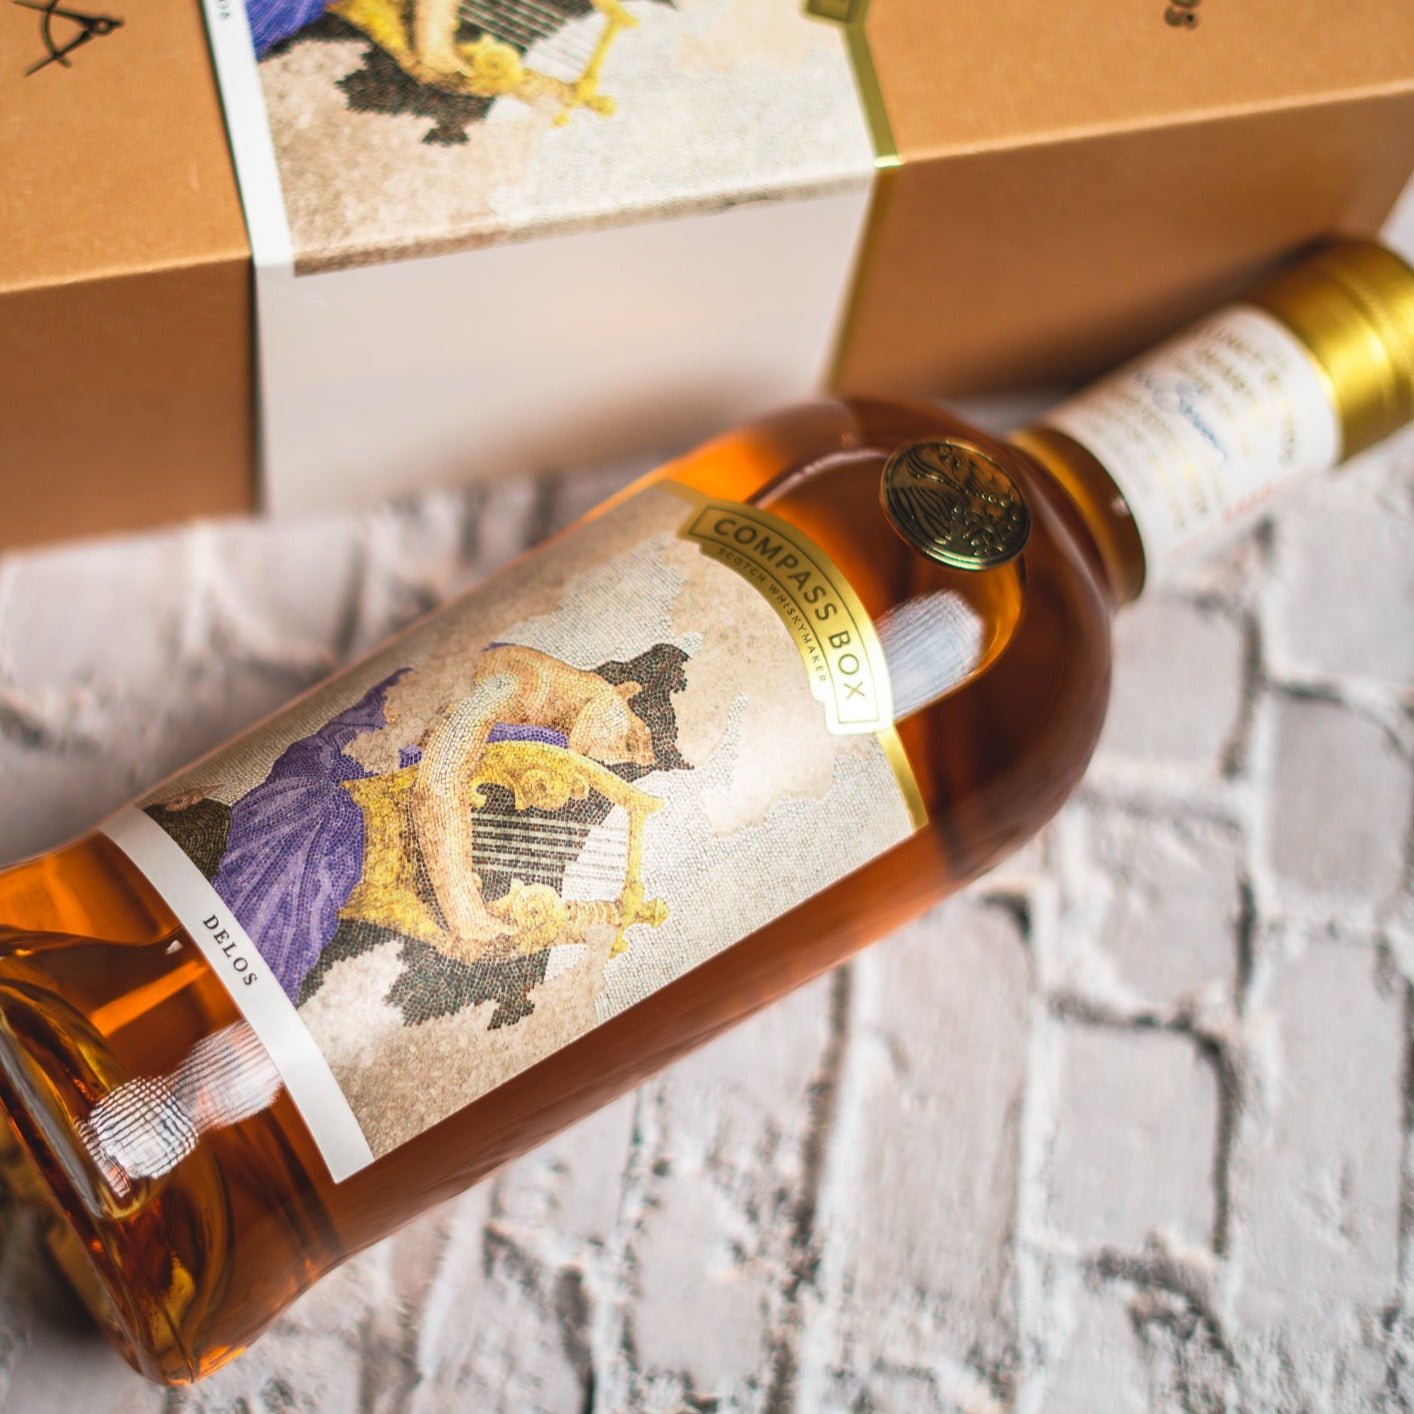 Compass Box | Delos | The Extinct Blends Quartet | Blended Scotch Whisky | 0,7l | 49%GET A BOTTLE